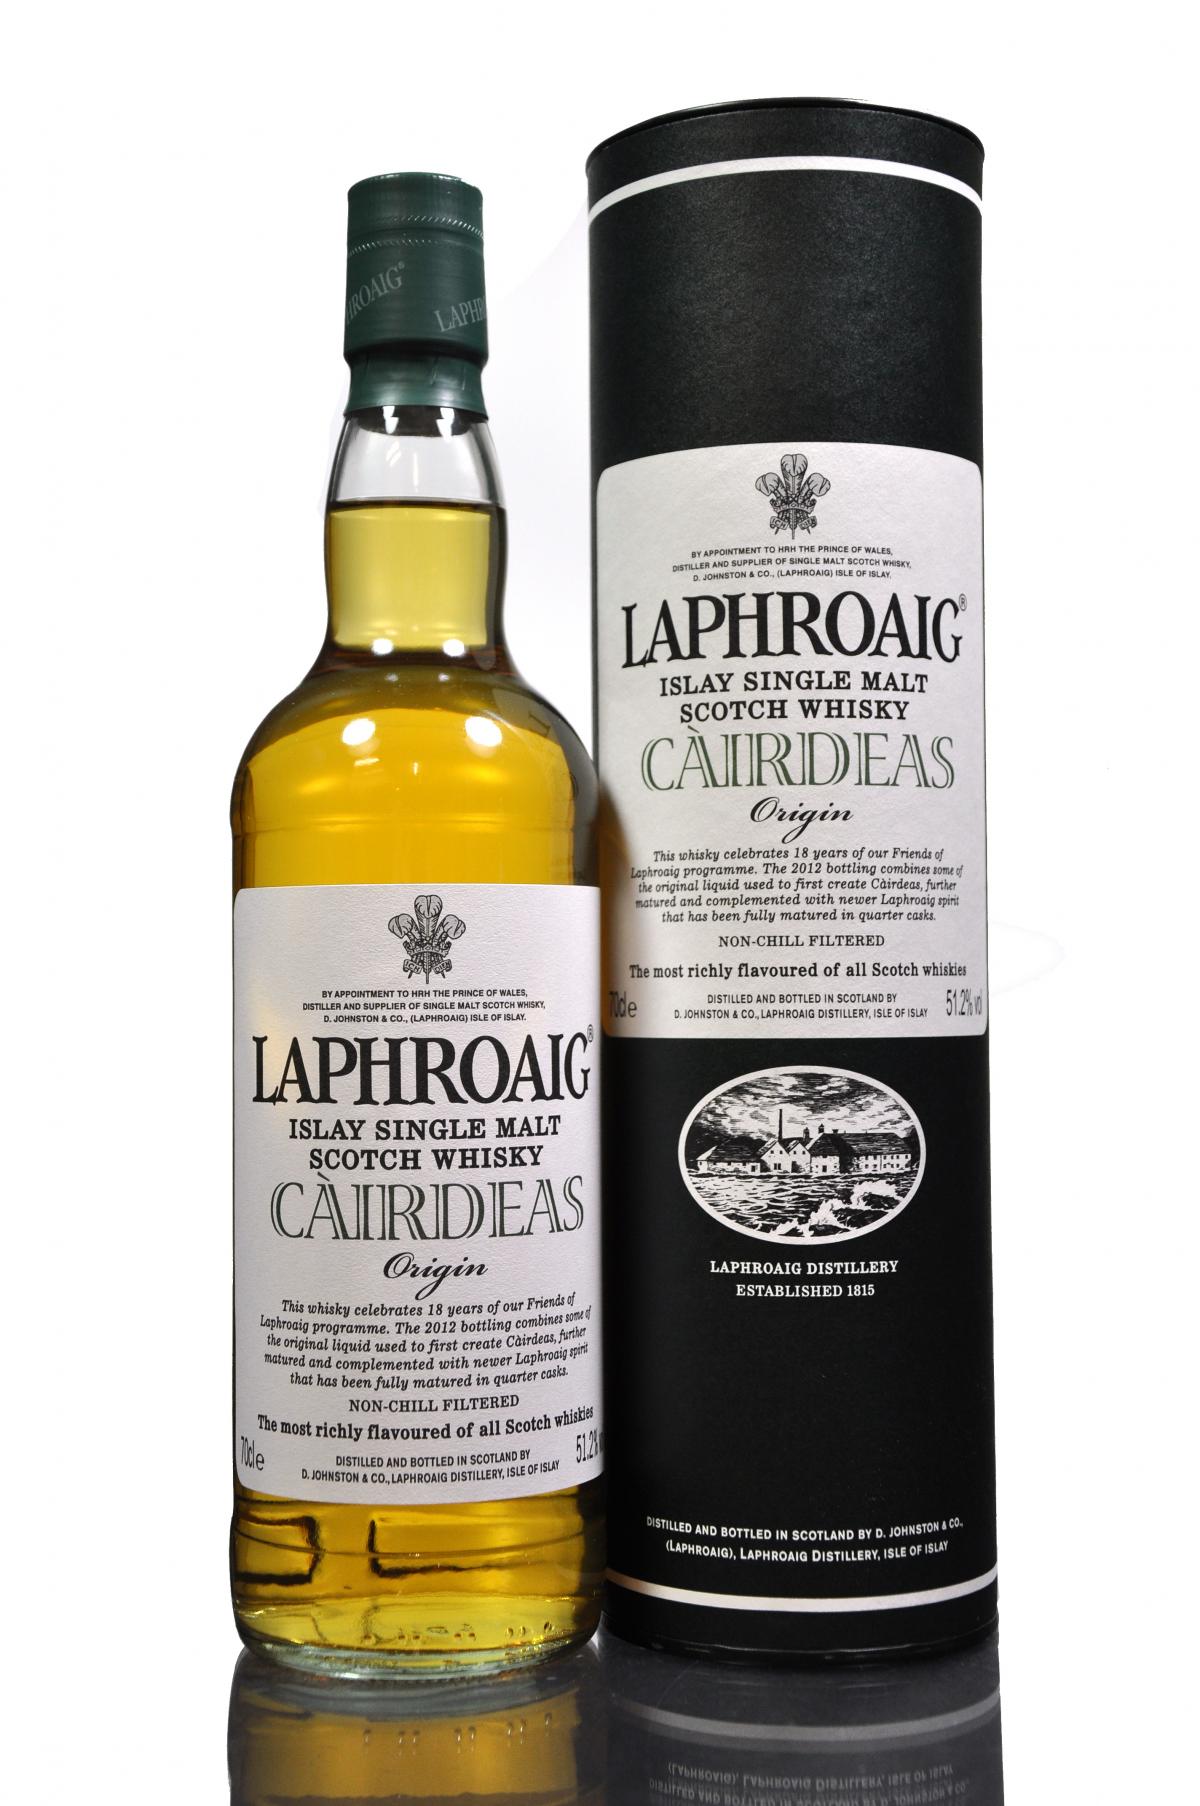 Laphroaig Cairdeas - Origin